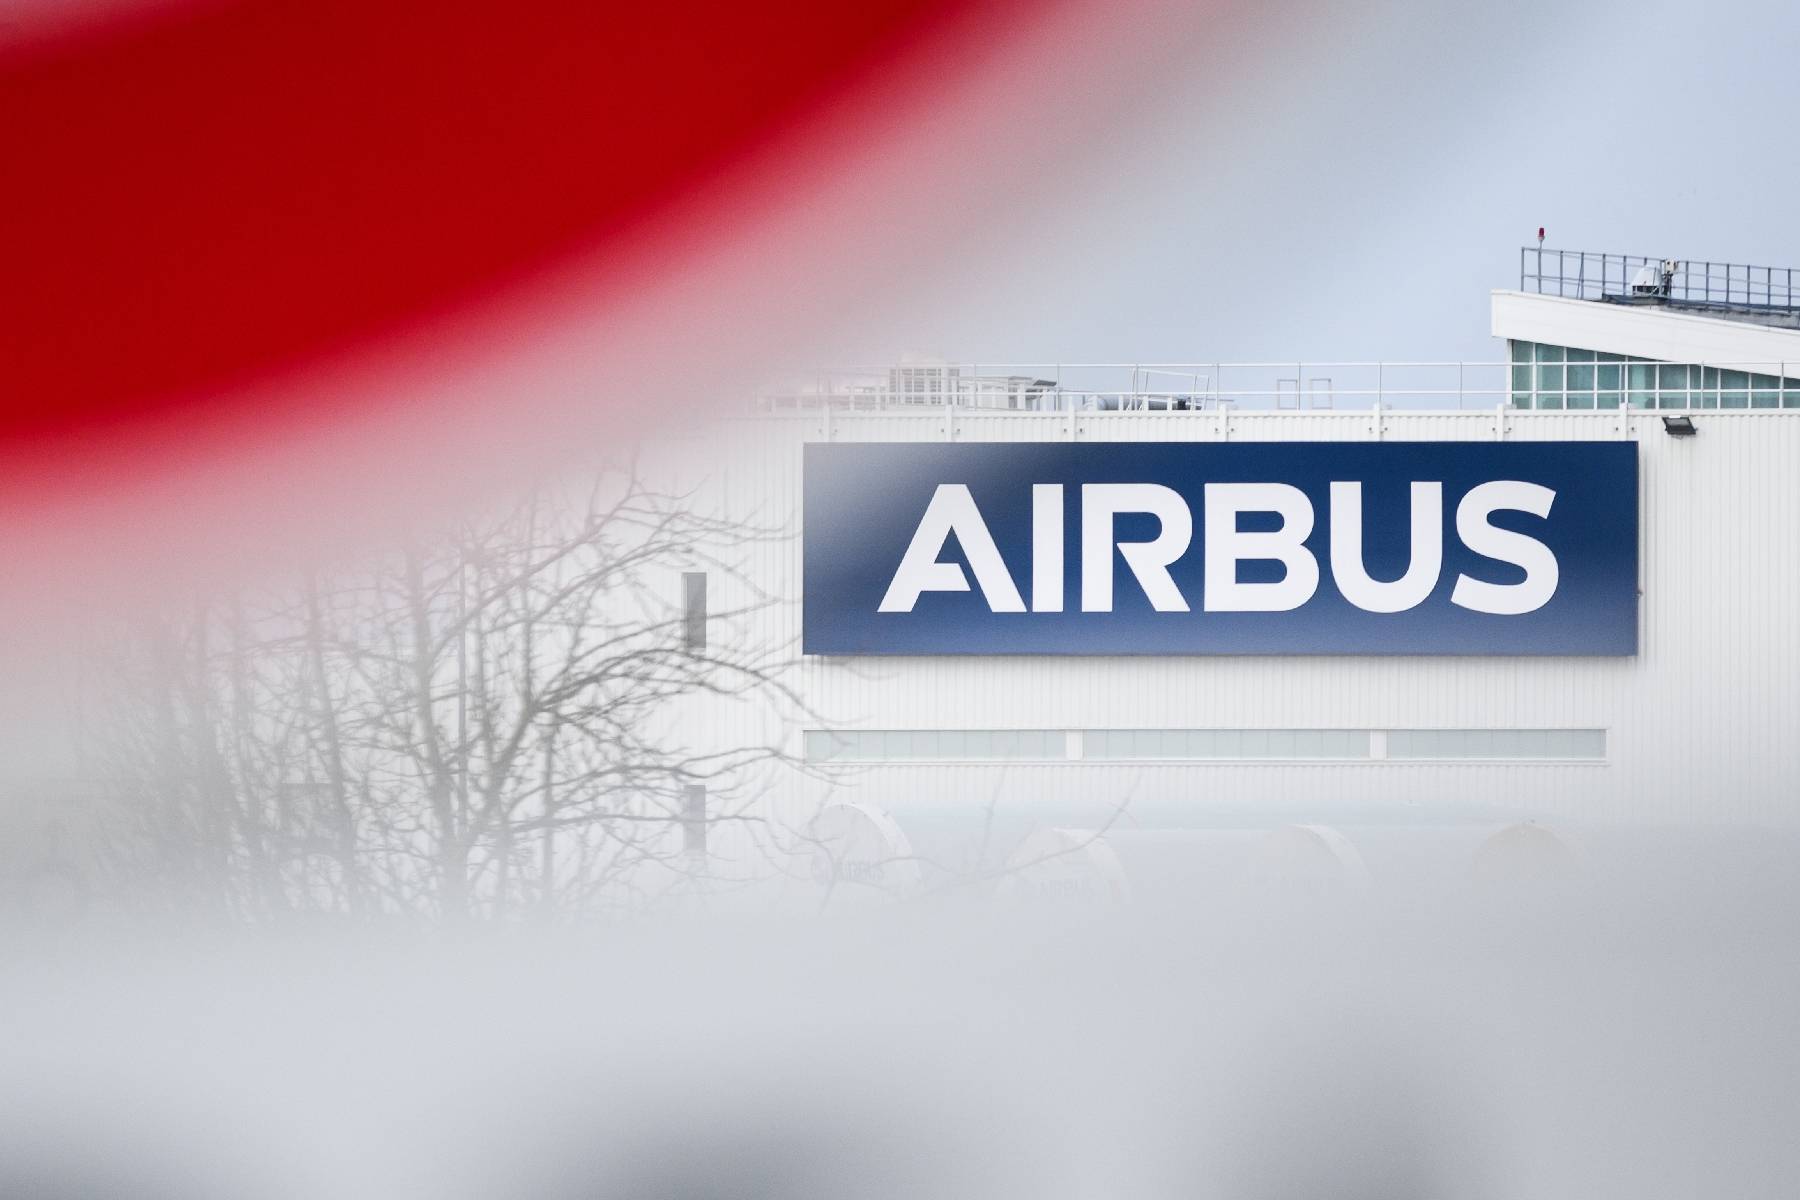 Airbus refond ses accords d'entreprise, va embaucher 3.500 personnes en France